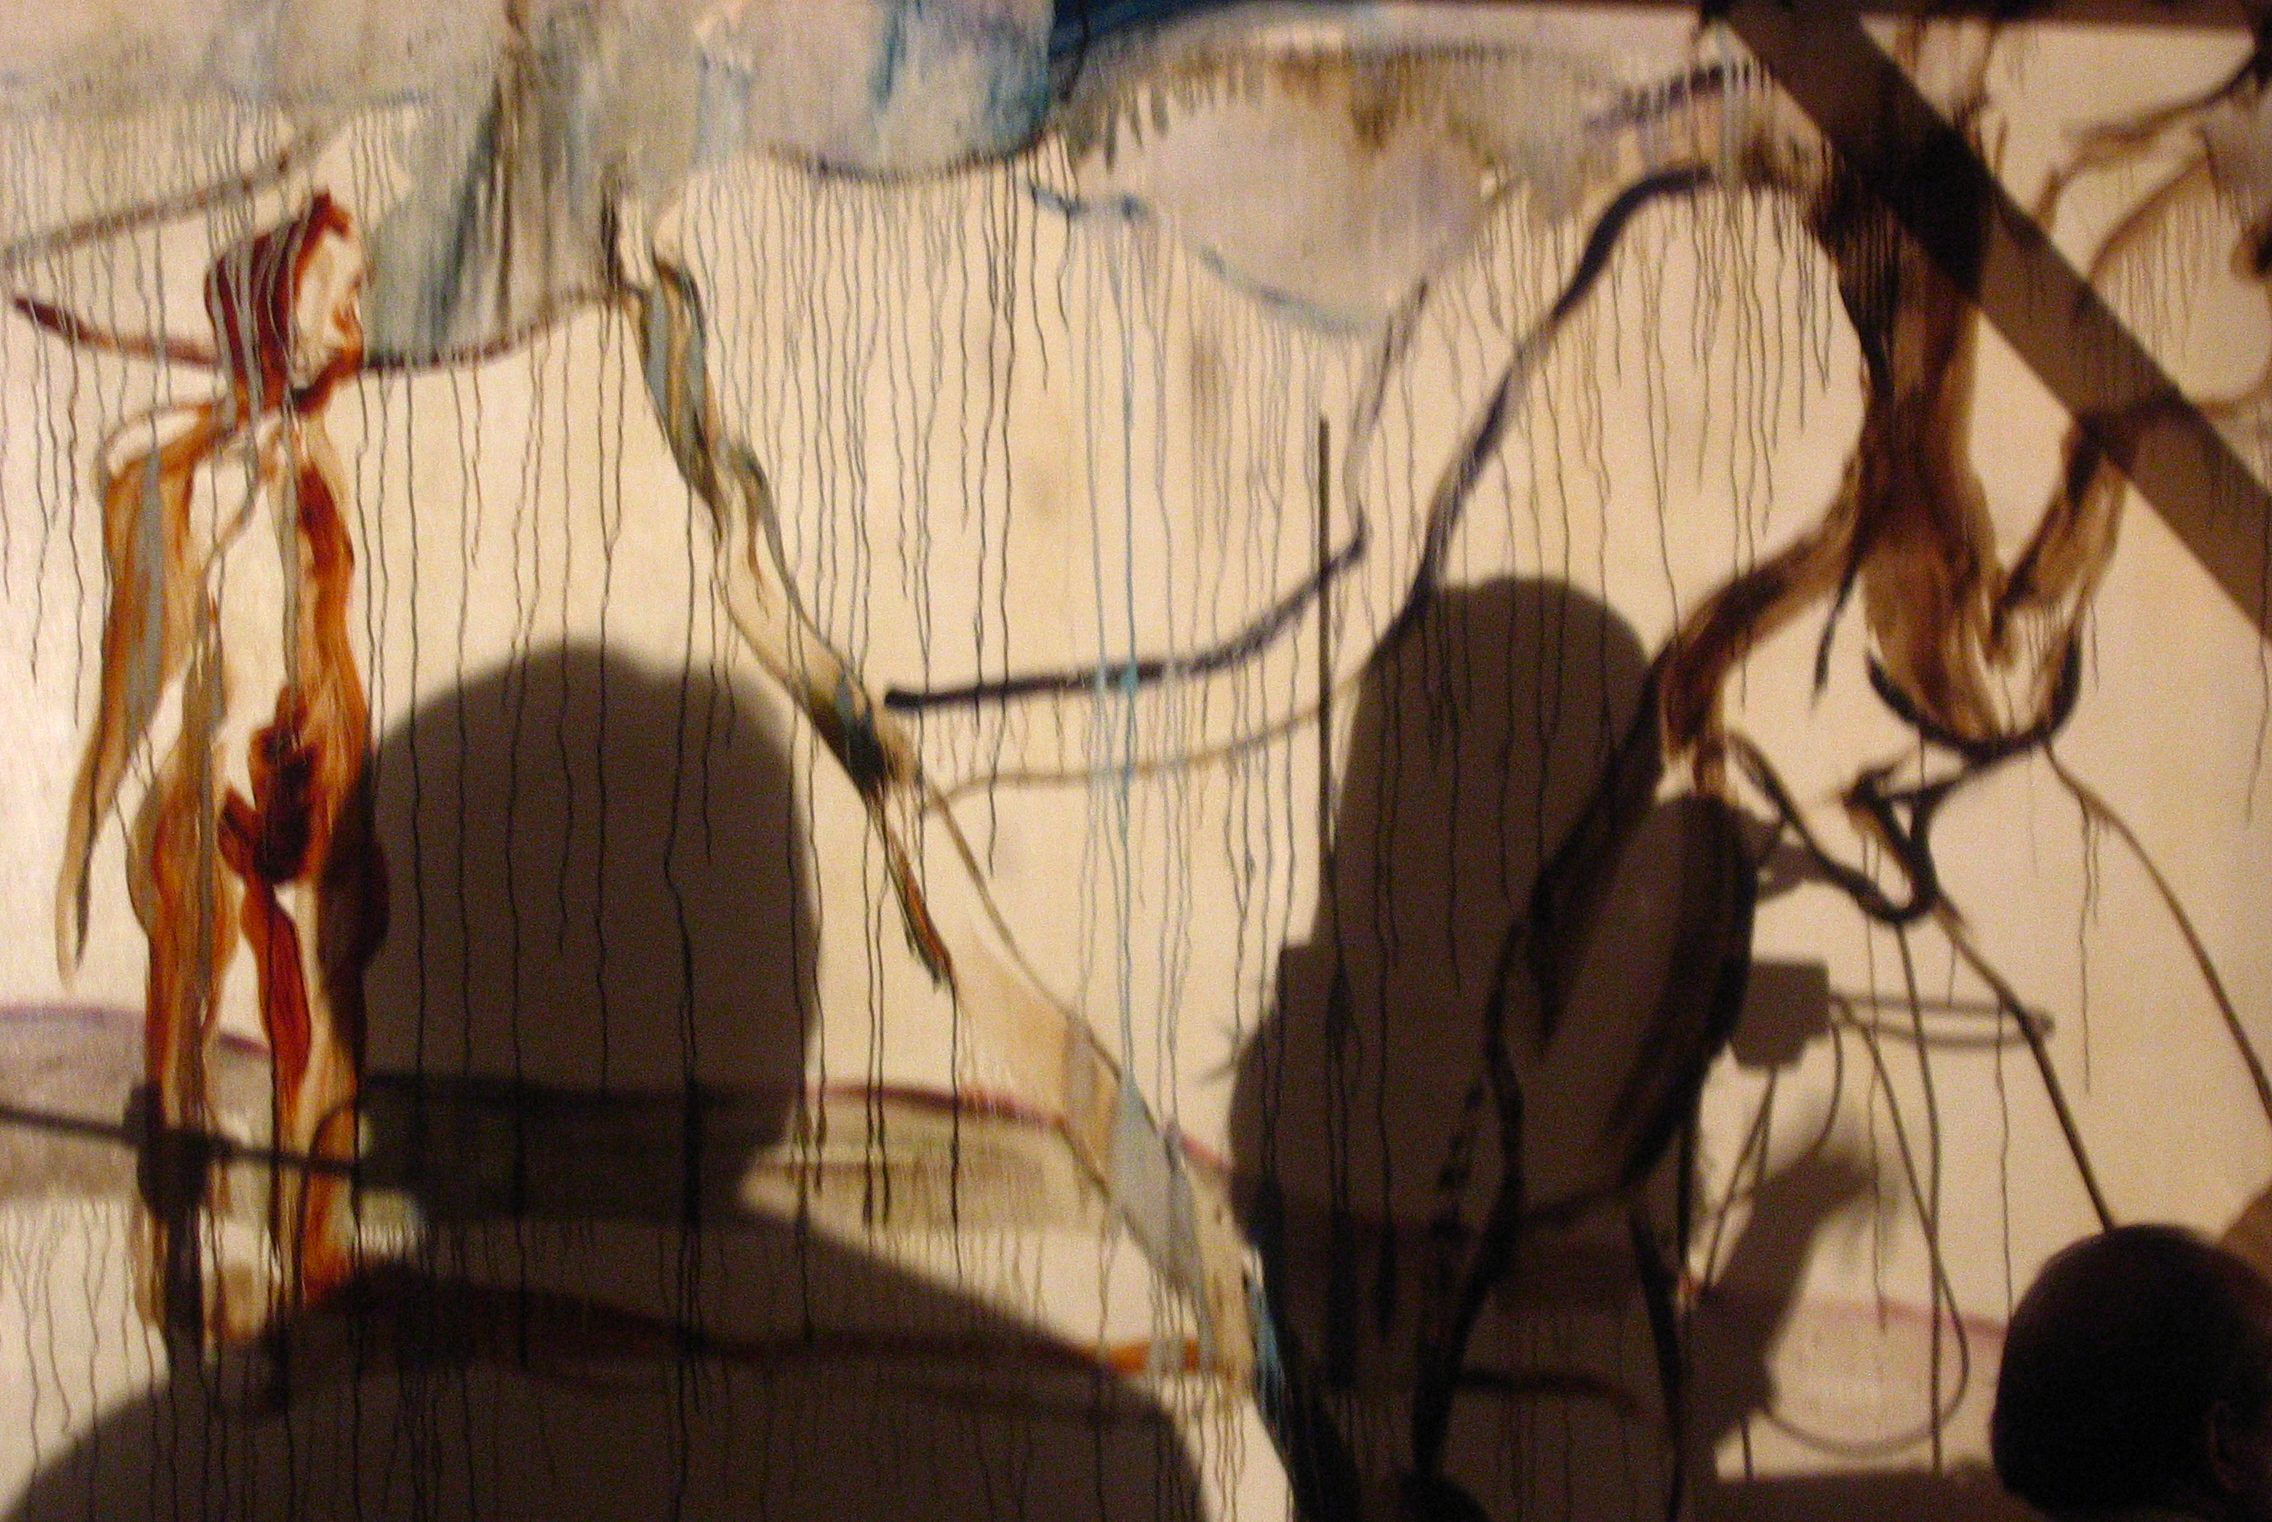 Performance in Principio erano le ombre (con l'ombra di Ivana Gatti) - olio su tela 500x300cm